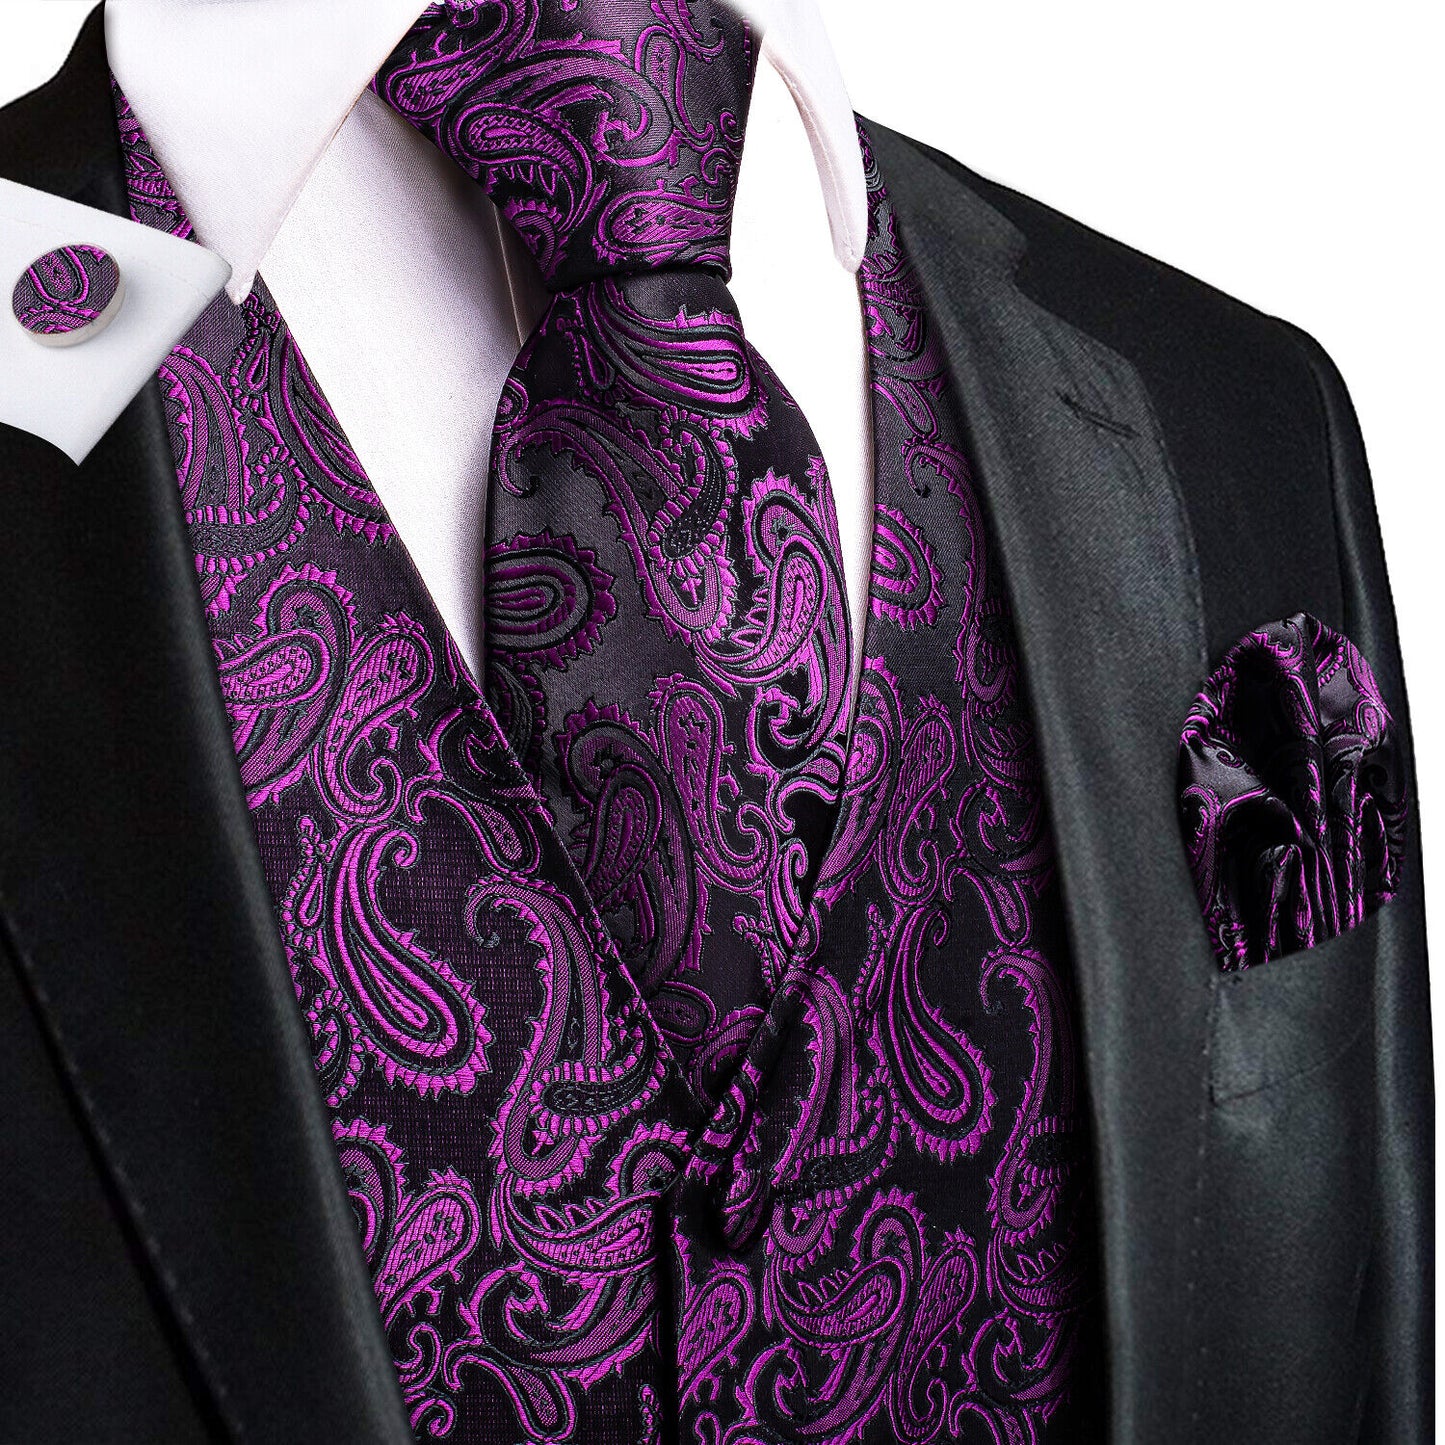 Designer Floral Waistcoat Silky Novelty Vest Purple Seeds